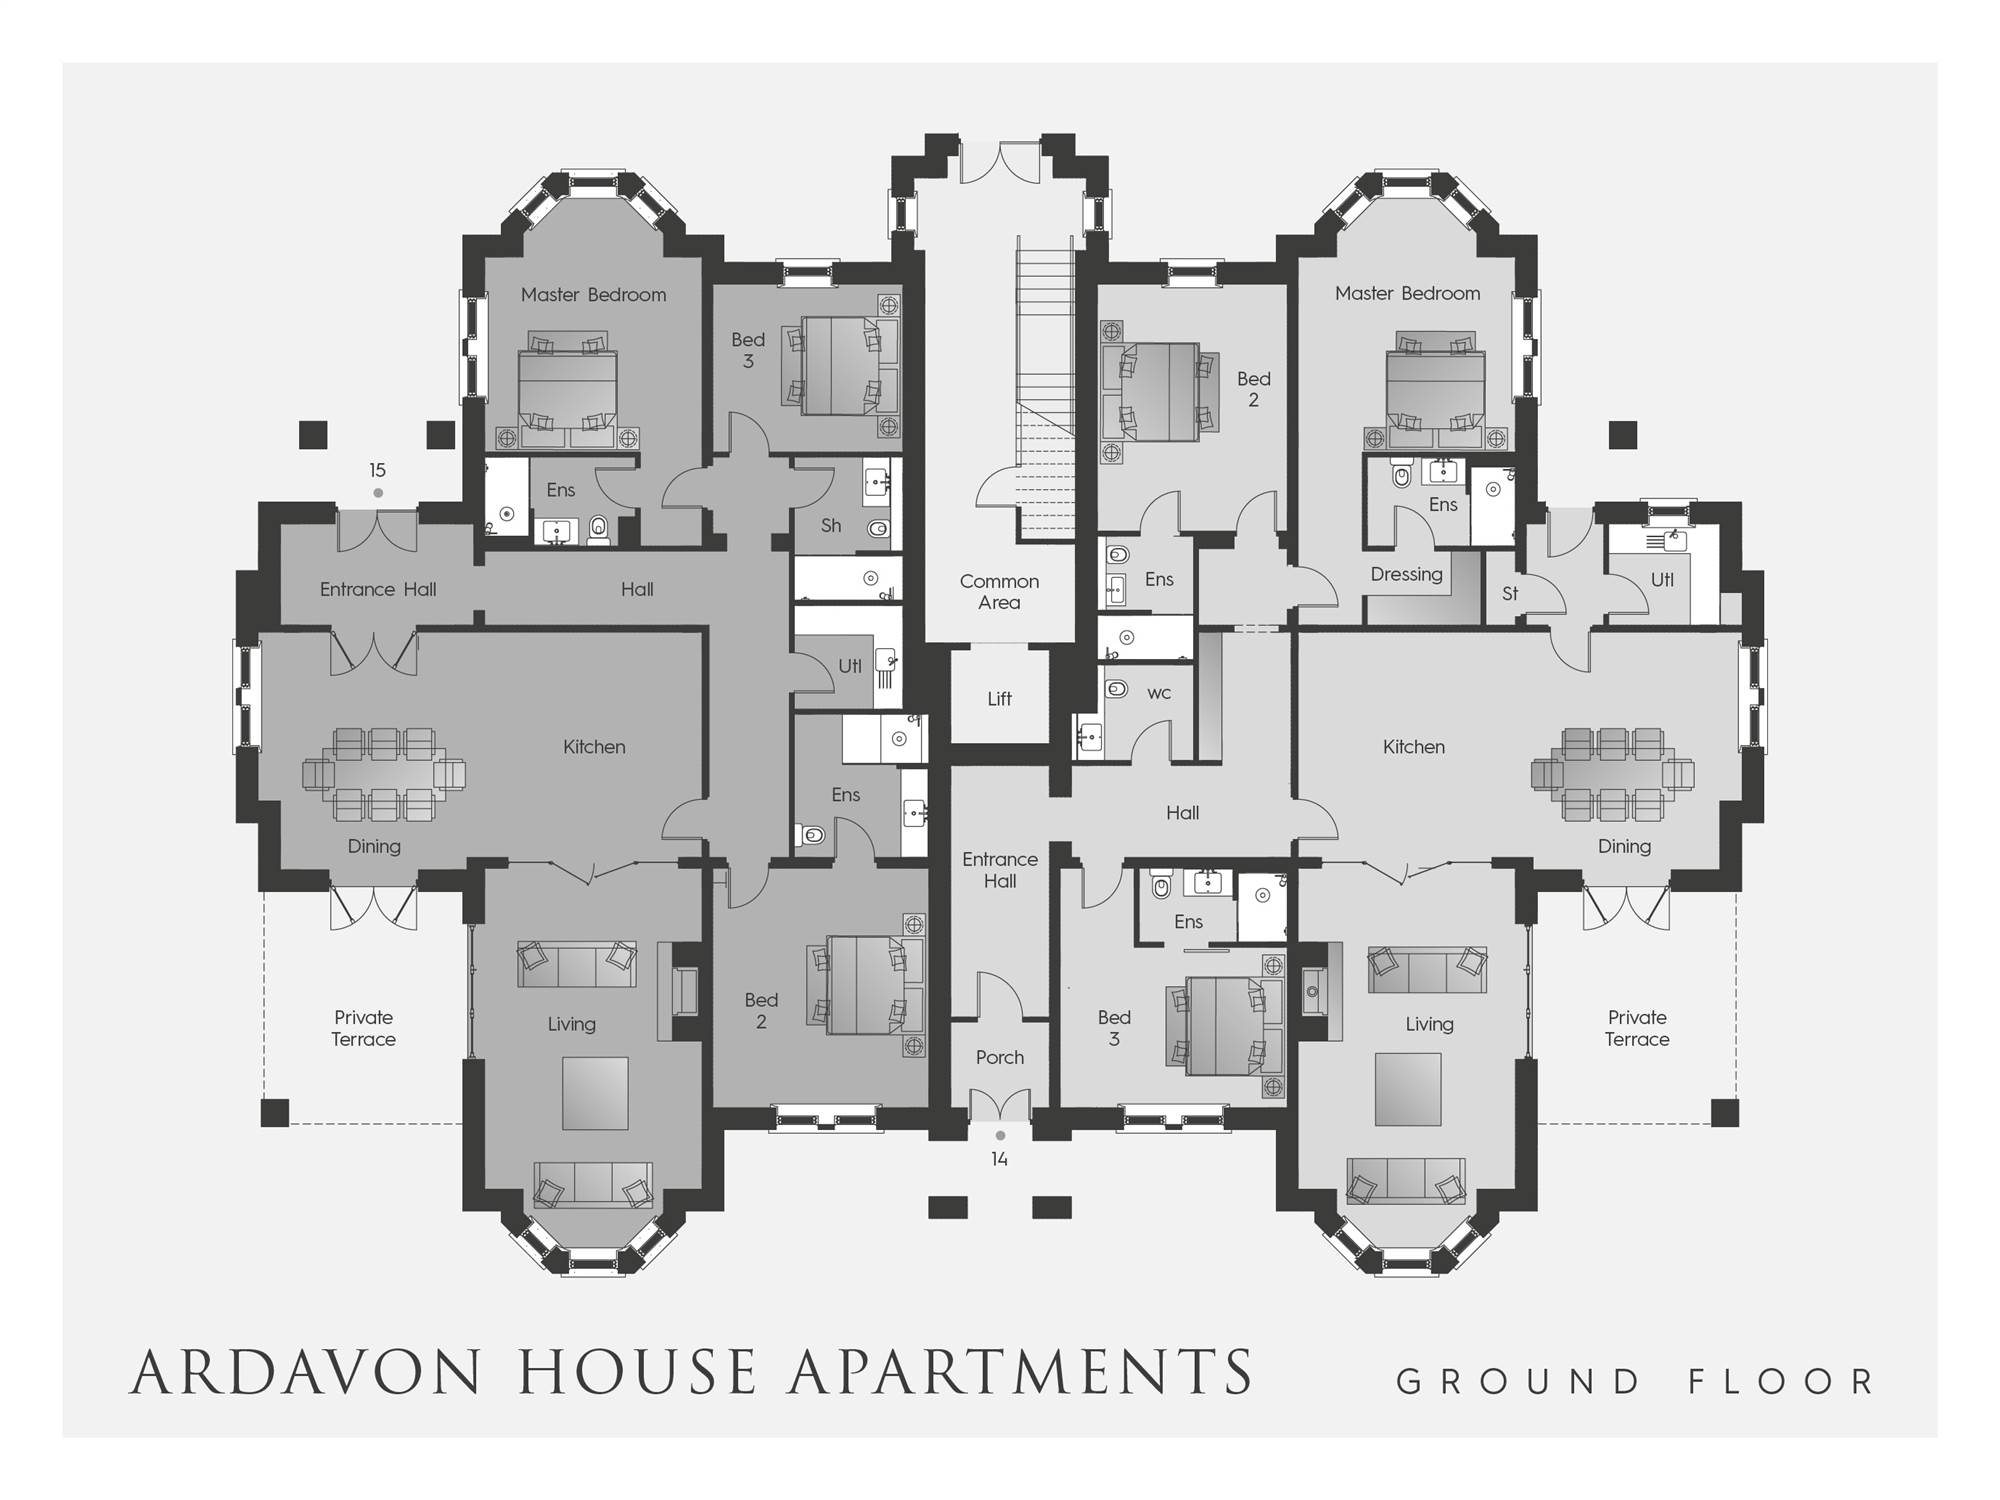 14 Ardavon House Apartments